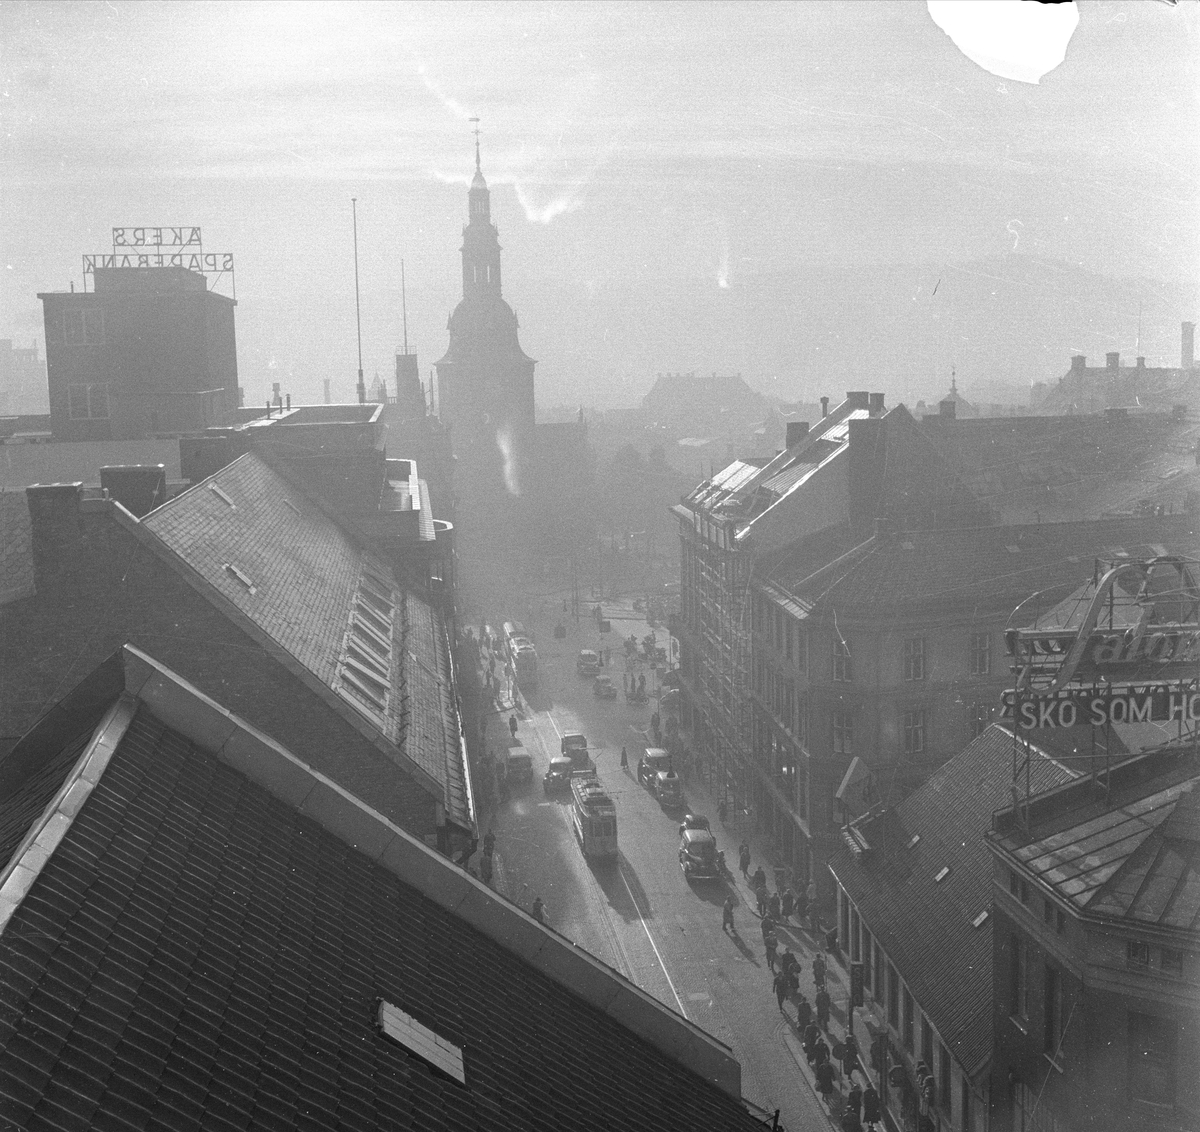 Dette er Grensen, sett fra Akersgata mot Stortorget og Domkirken.
September 1955. Bygate med bygårder og trafikk.